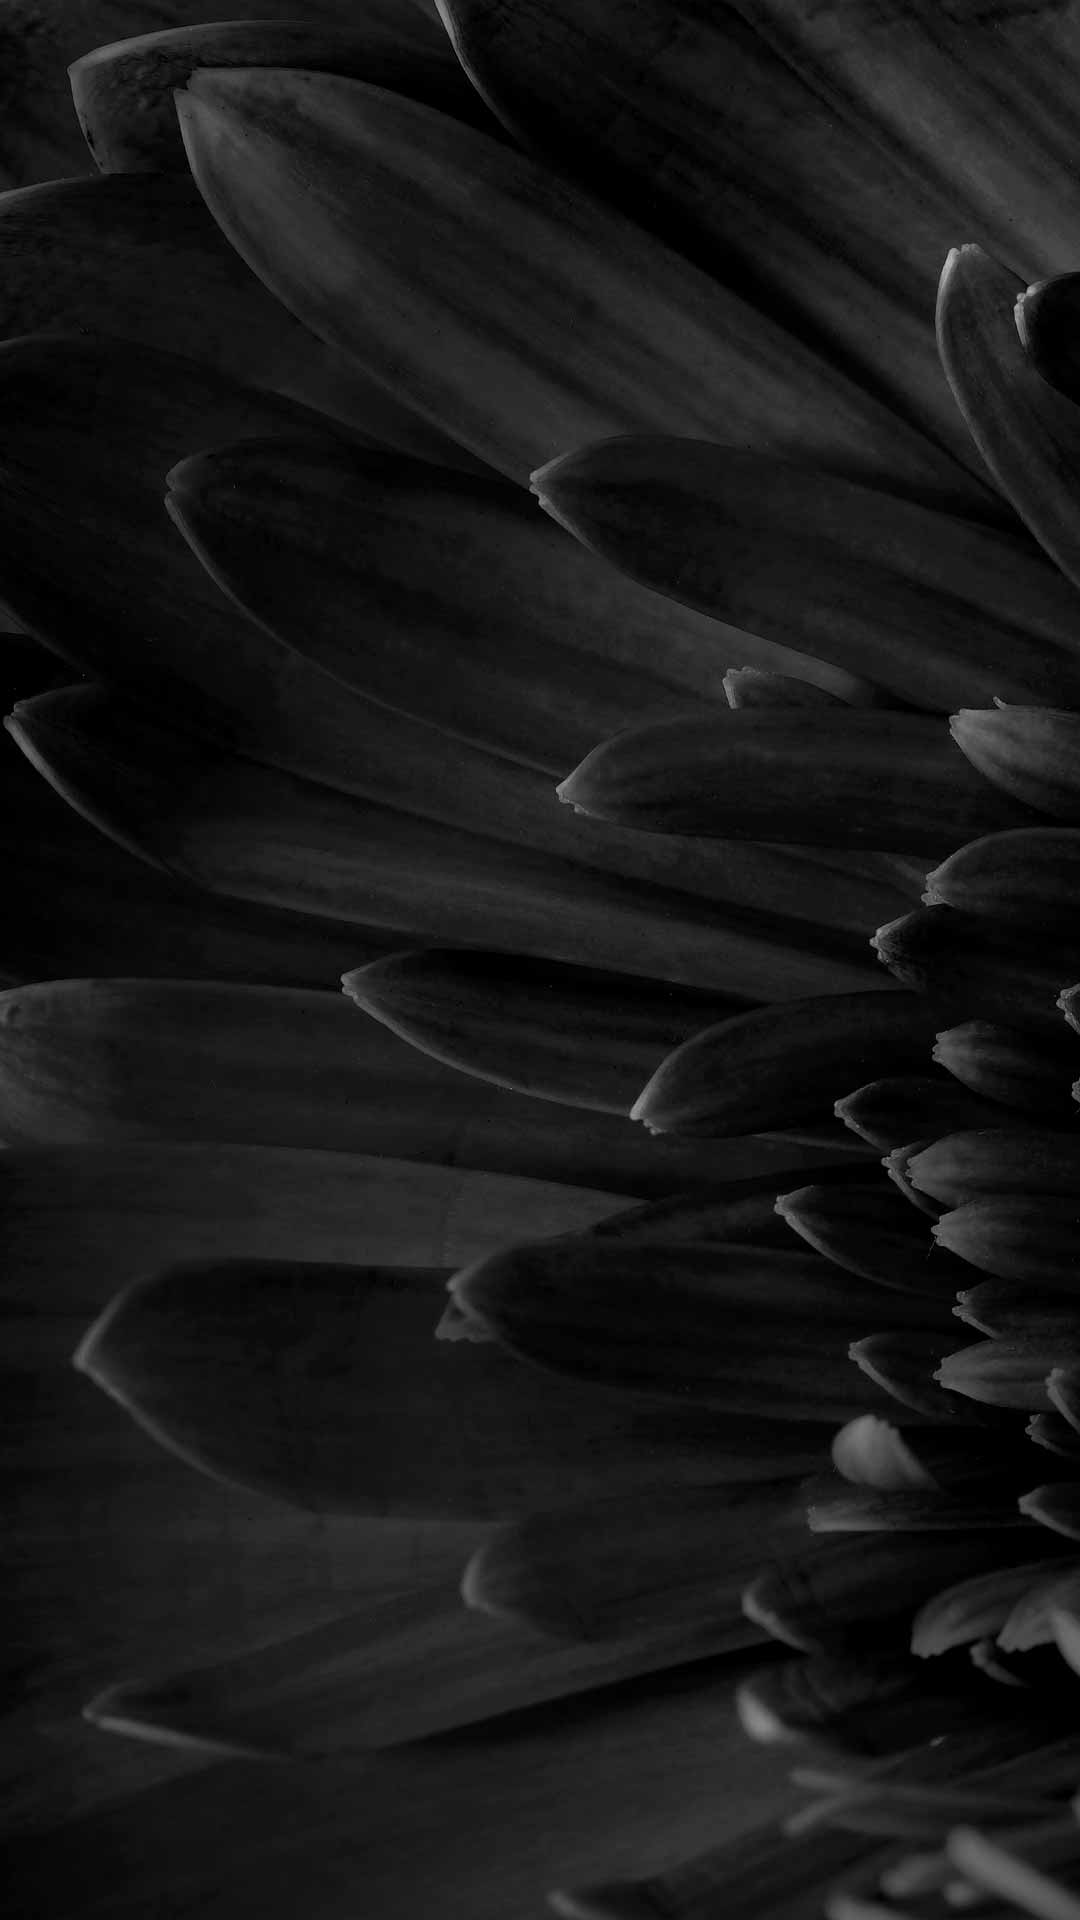 black daisy wallpaper full hd image